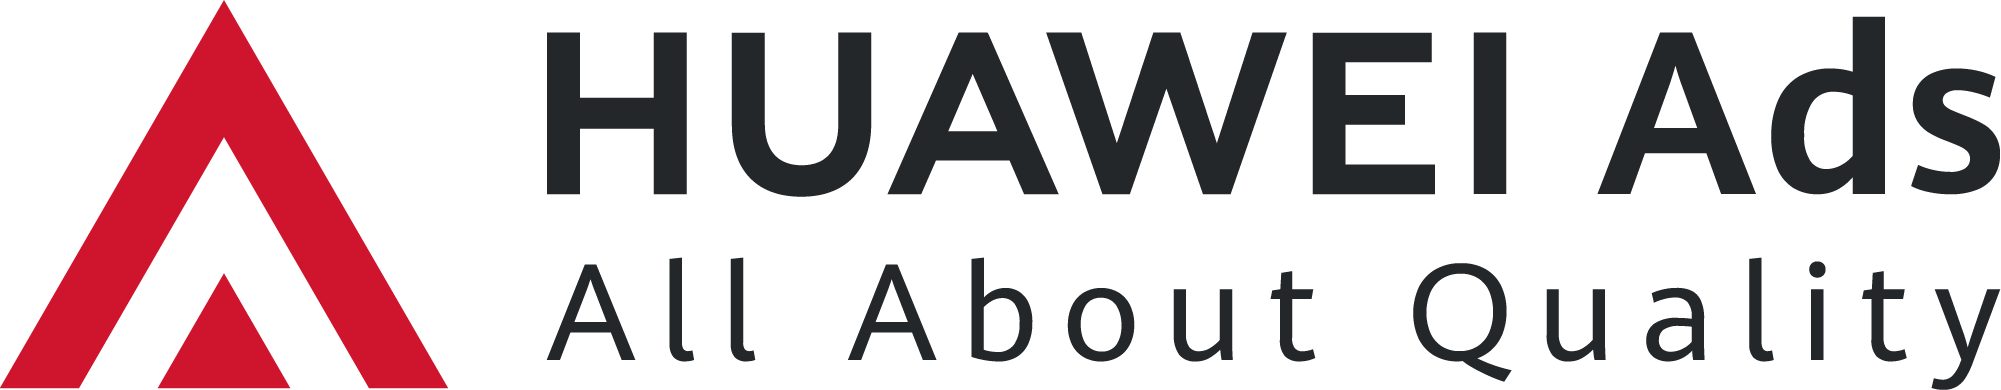 Huawei_Ads_Logo